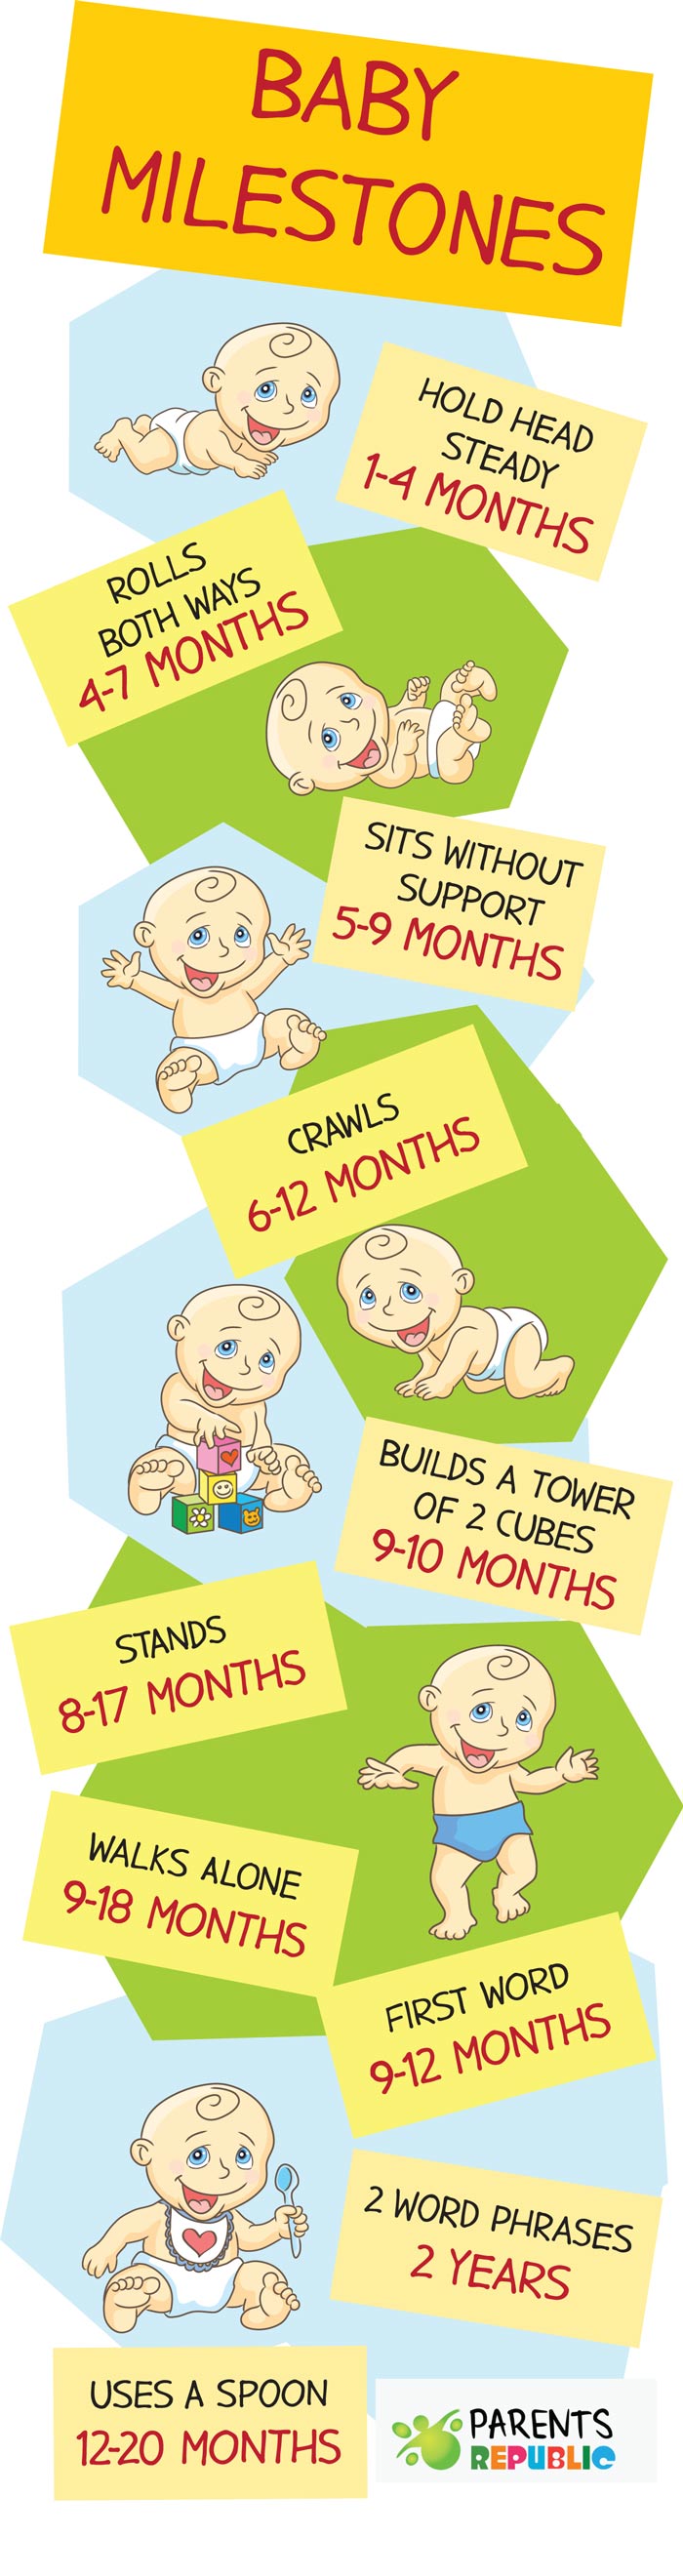 baby-development-milestones-infographic.jpg